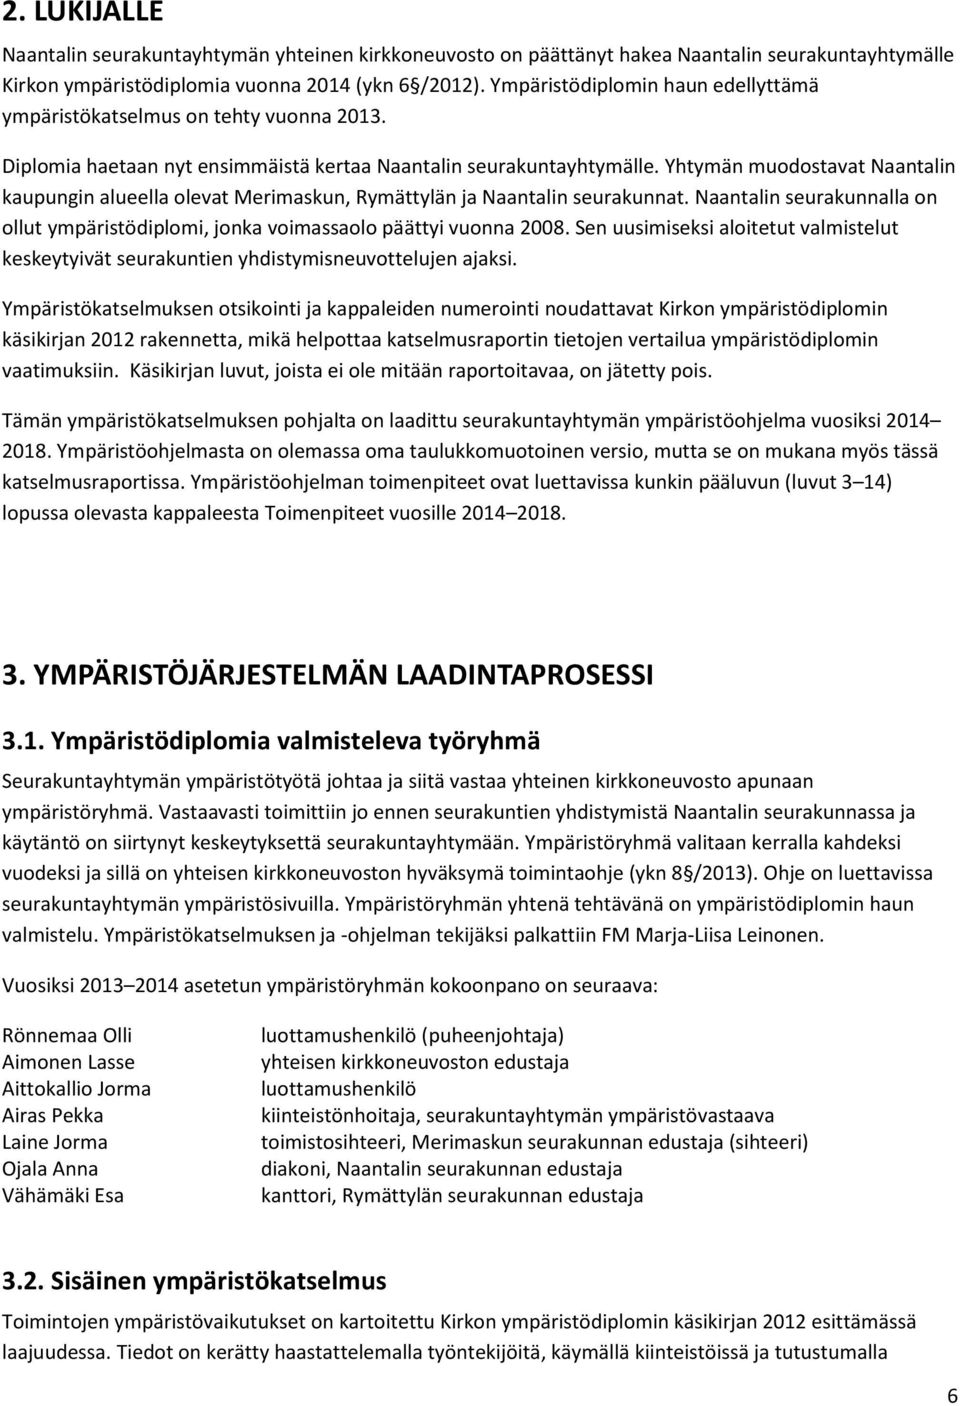 Yhtymän muodostavat Naantalin kaupungin alueella olevat Merimaskun, Rymättylän ja Naantalin seurakunnat. Naantalin seurakunnalla on ollut ympäristödiplomi, jonka voimassaolo päättyi vuonna 2008.